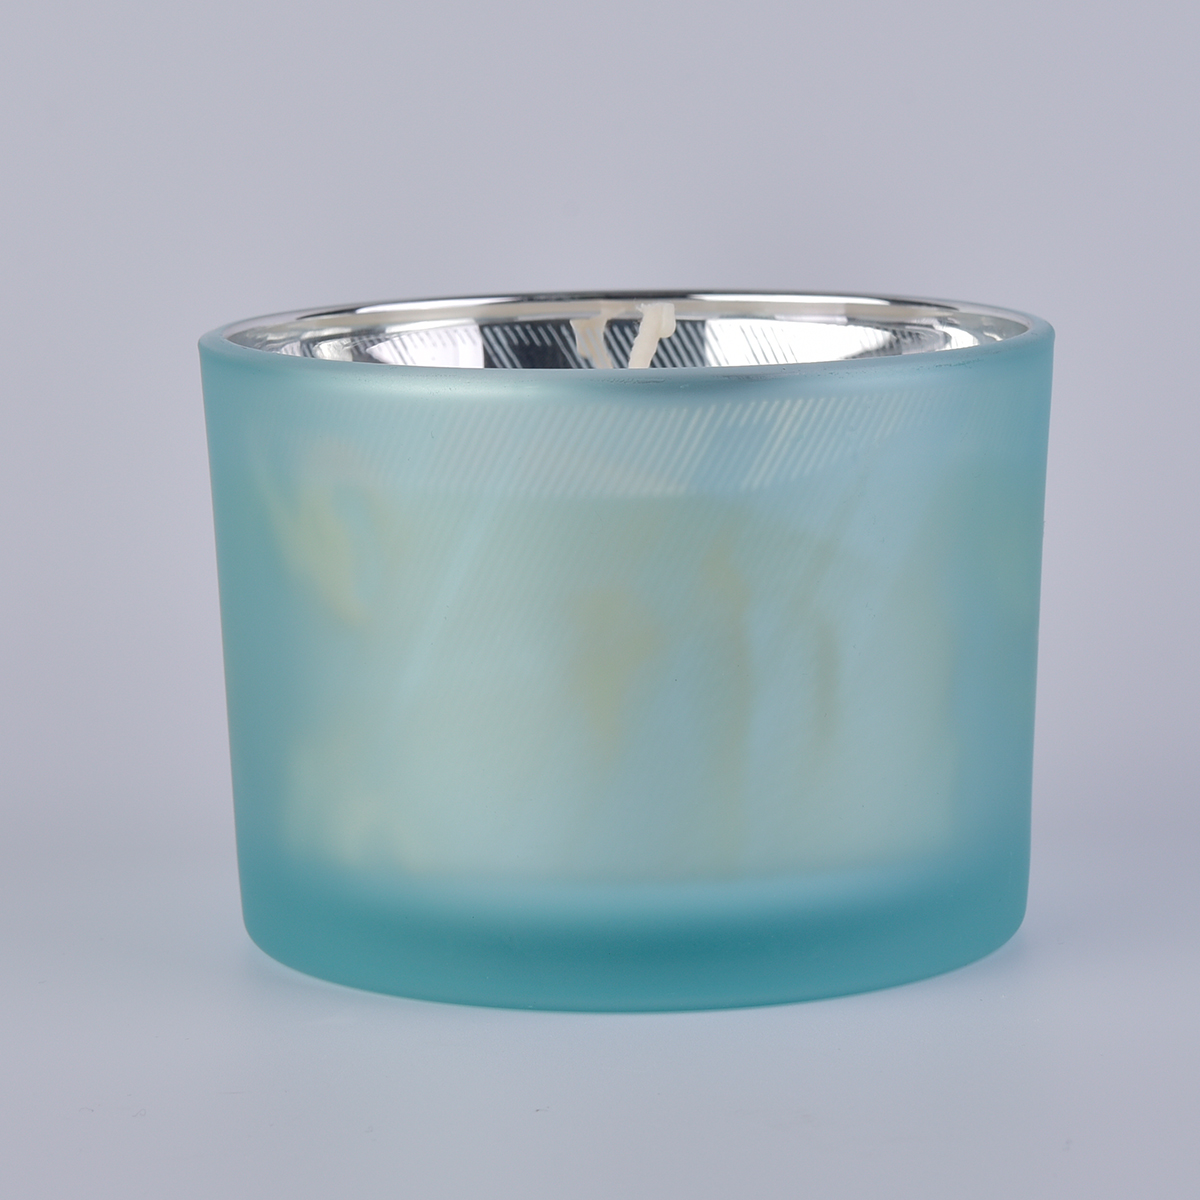 3 Dochtglaskerzenbehälter mit Dekoration